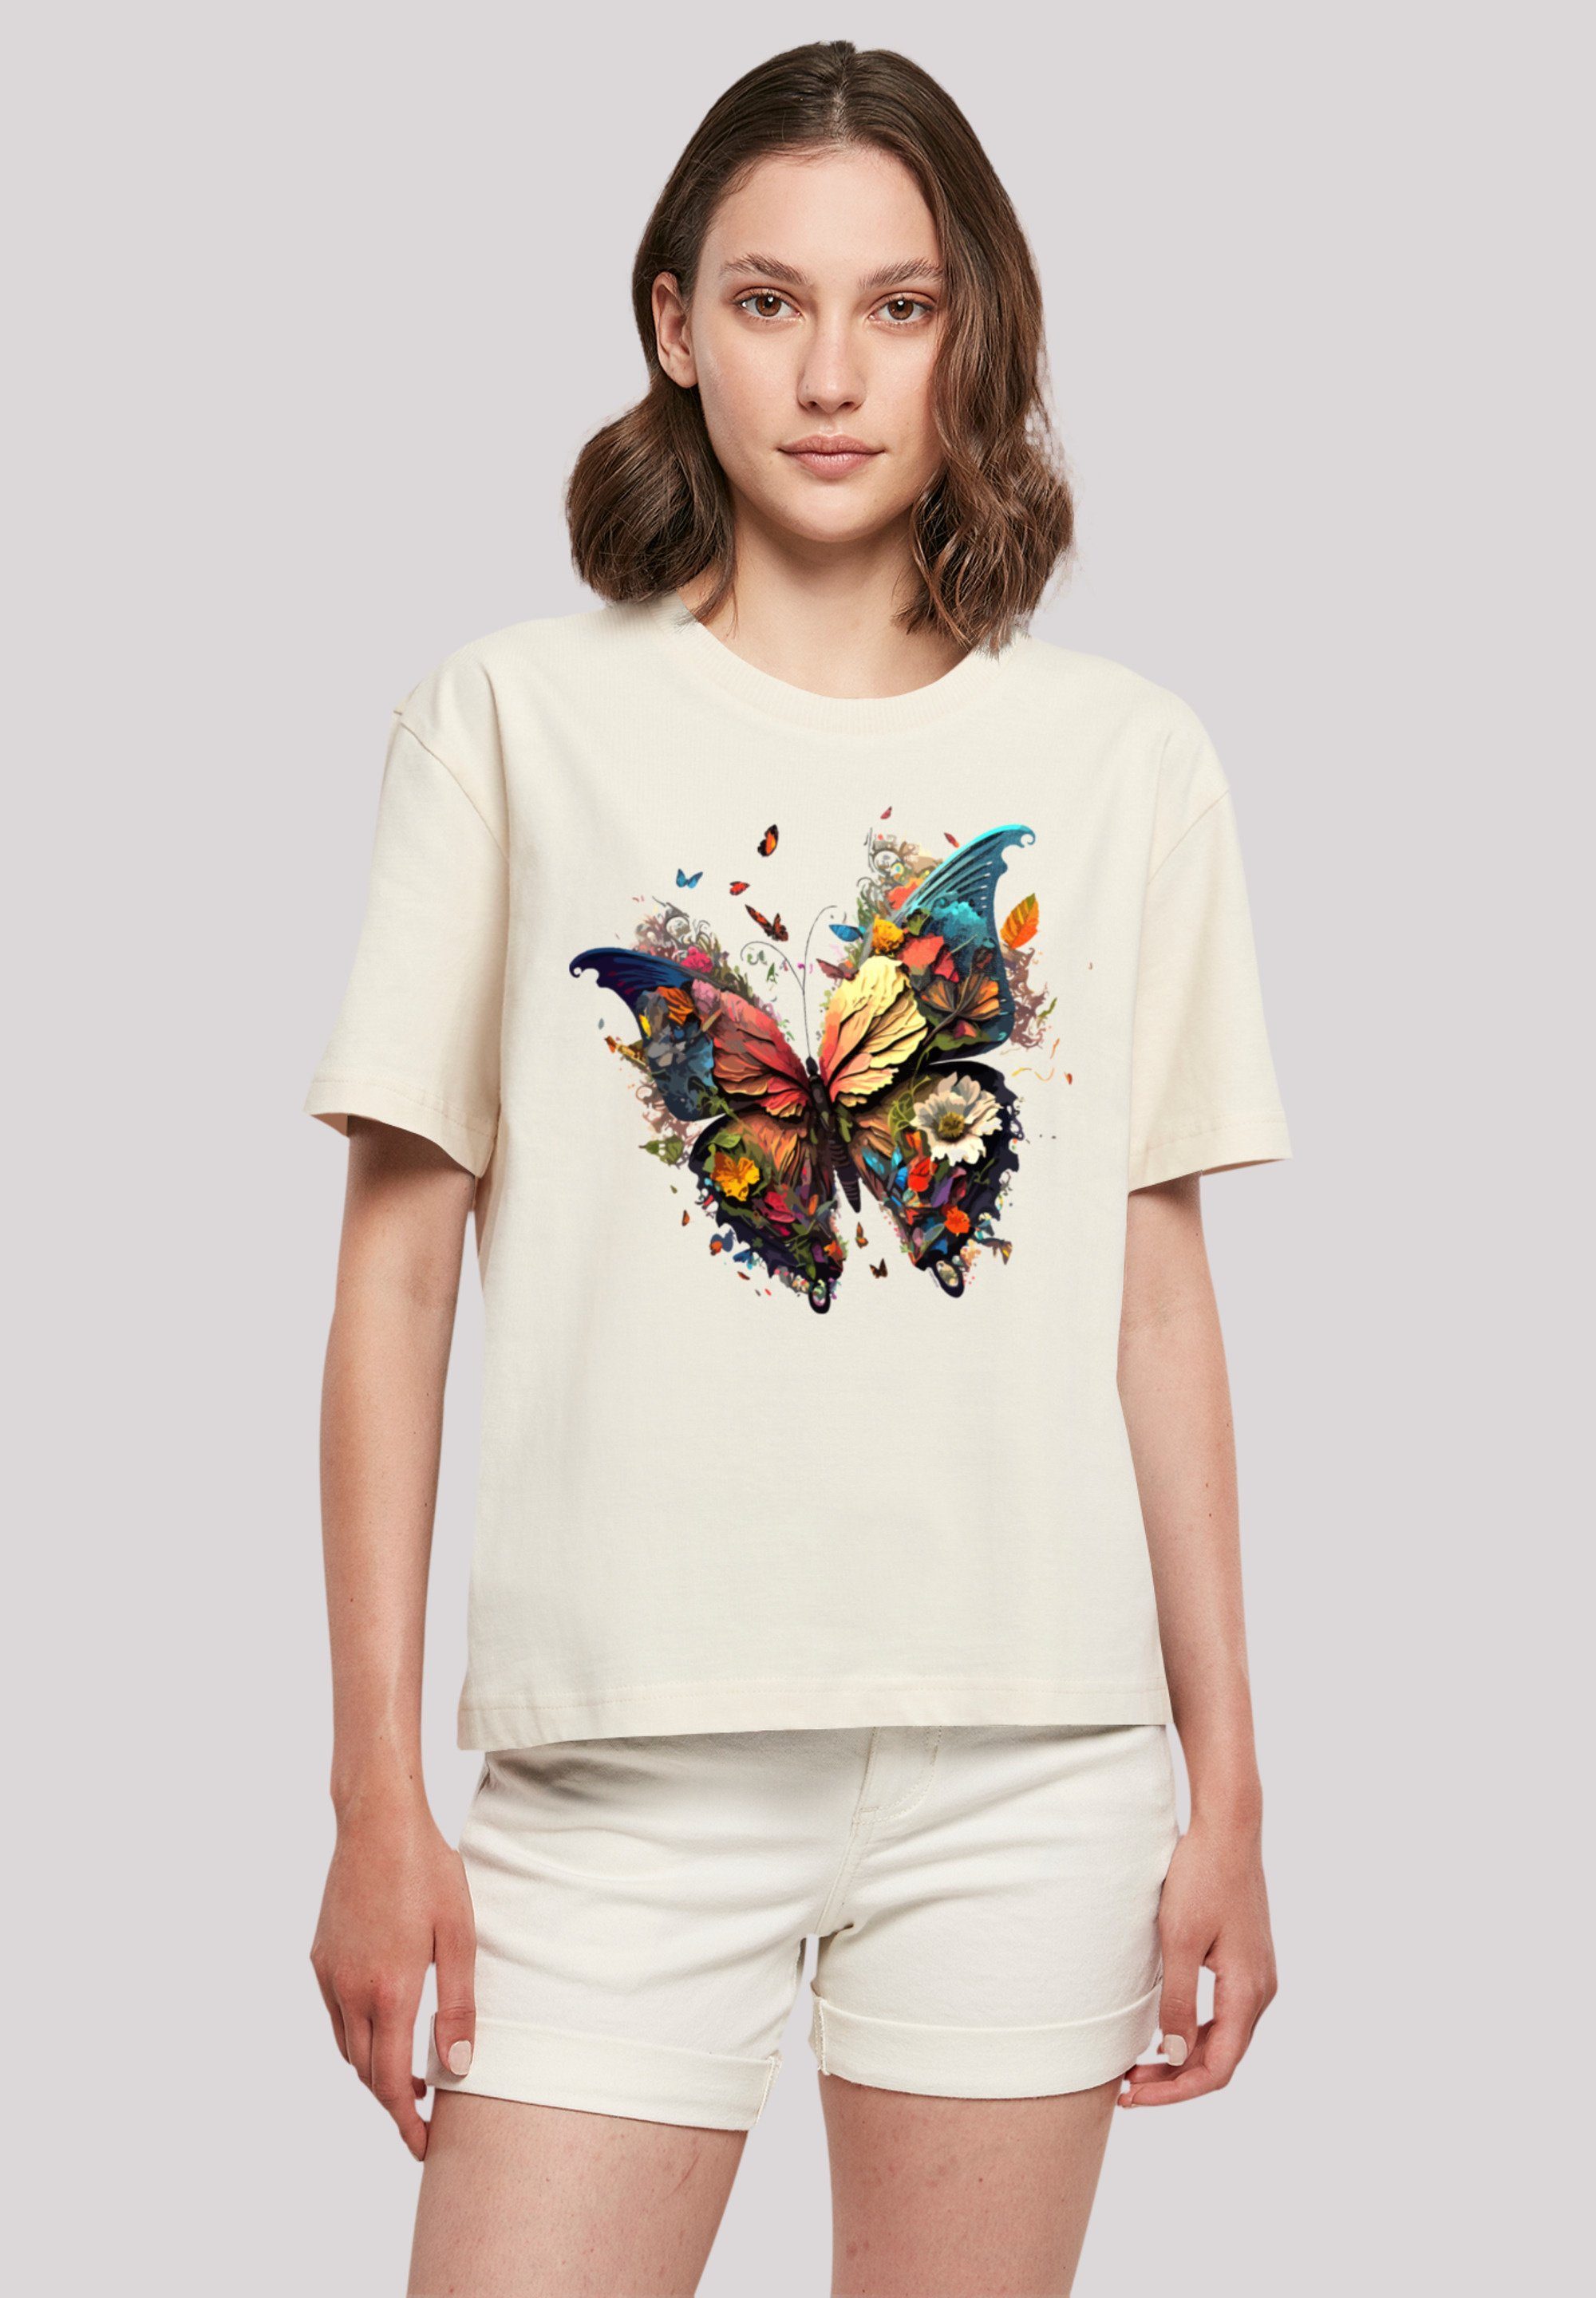 F4NT4STIC T-Shirt Schmetterling Magic Look für Print, Rundhalsausschnitt Gerippter stylischen